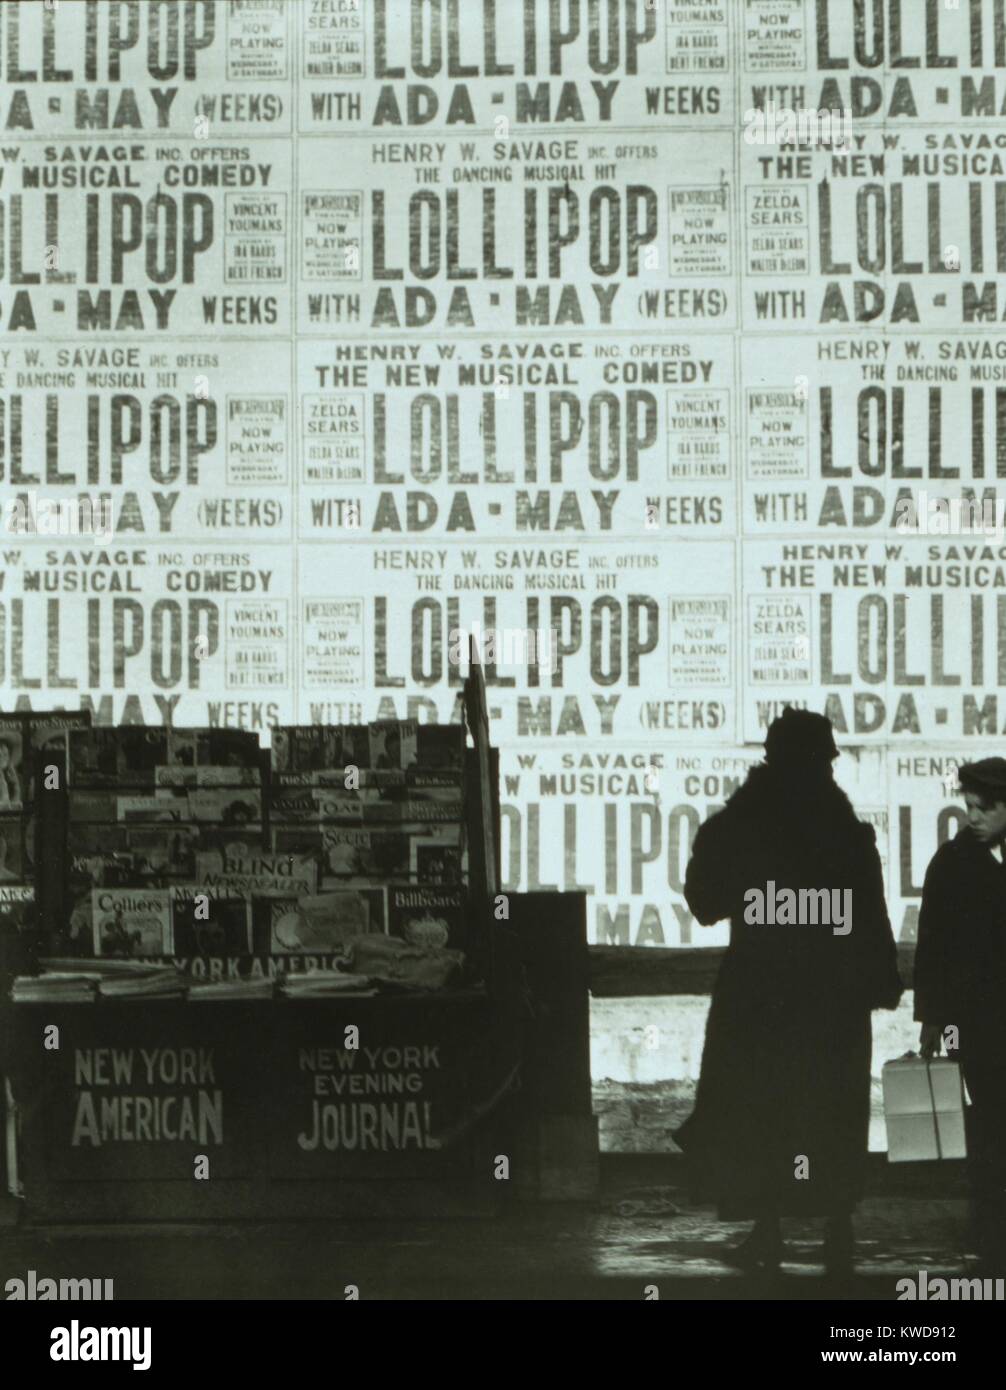 Wand von Plakaten die musikalische Komödie "Lollipop" mit Ada kann Wochen, C. 1924. Ein zeitungskiosk zeigt populären Zeitschriften im Vordergrund. Foto von Ralph Steiner (BSLOC 2016 8 27) Stockfoto